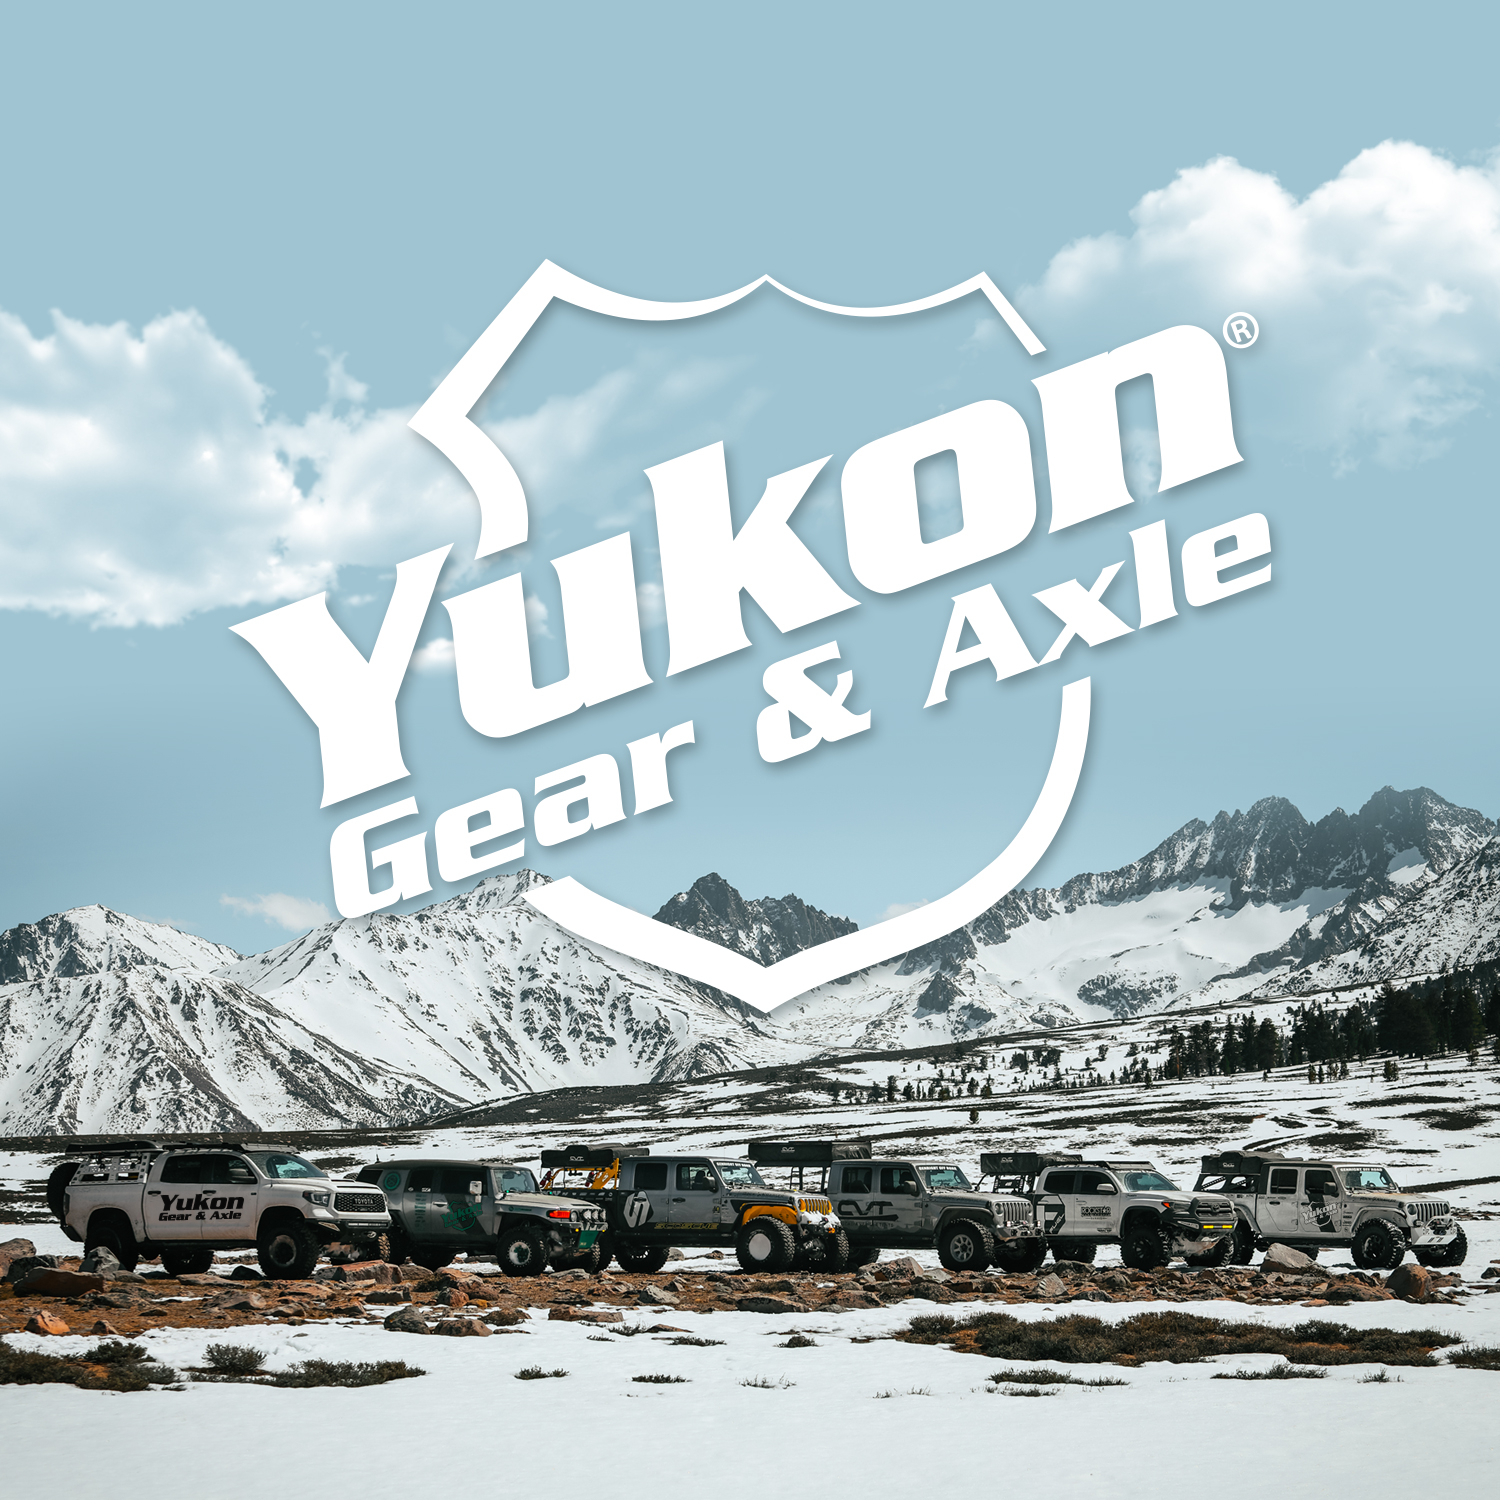 Yukon Stage 2 Jeep JK Re-Gear Kit w/Covers for Dana 44, 5.38 Ratio, 24 Spline